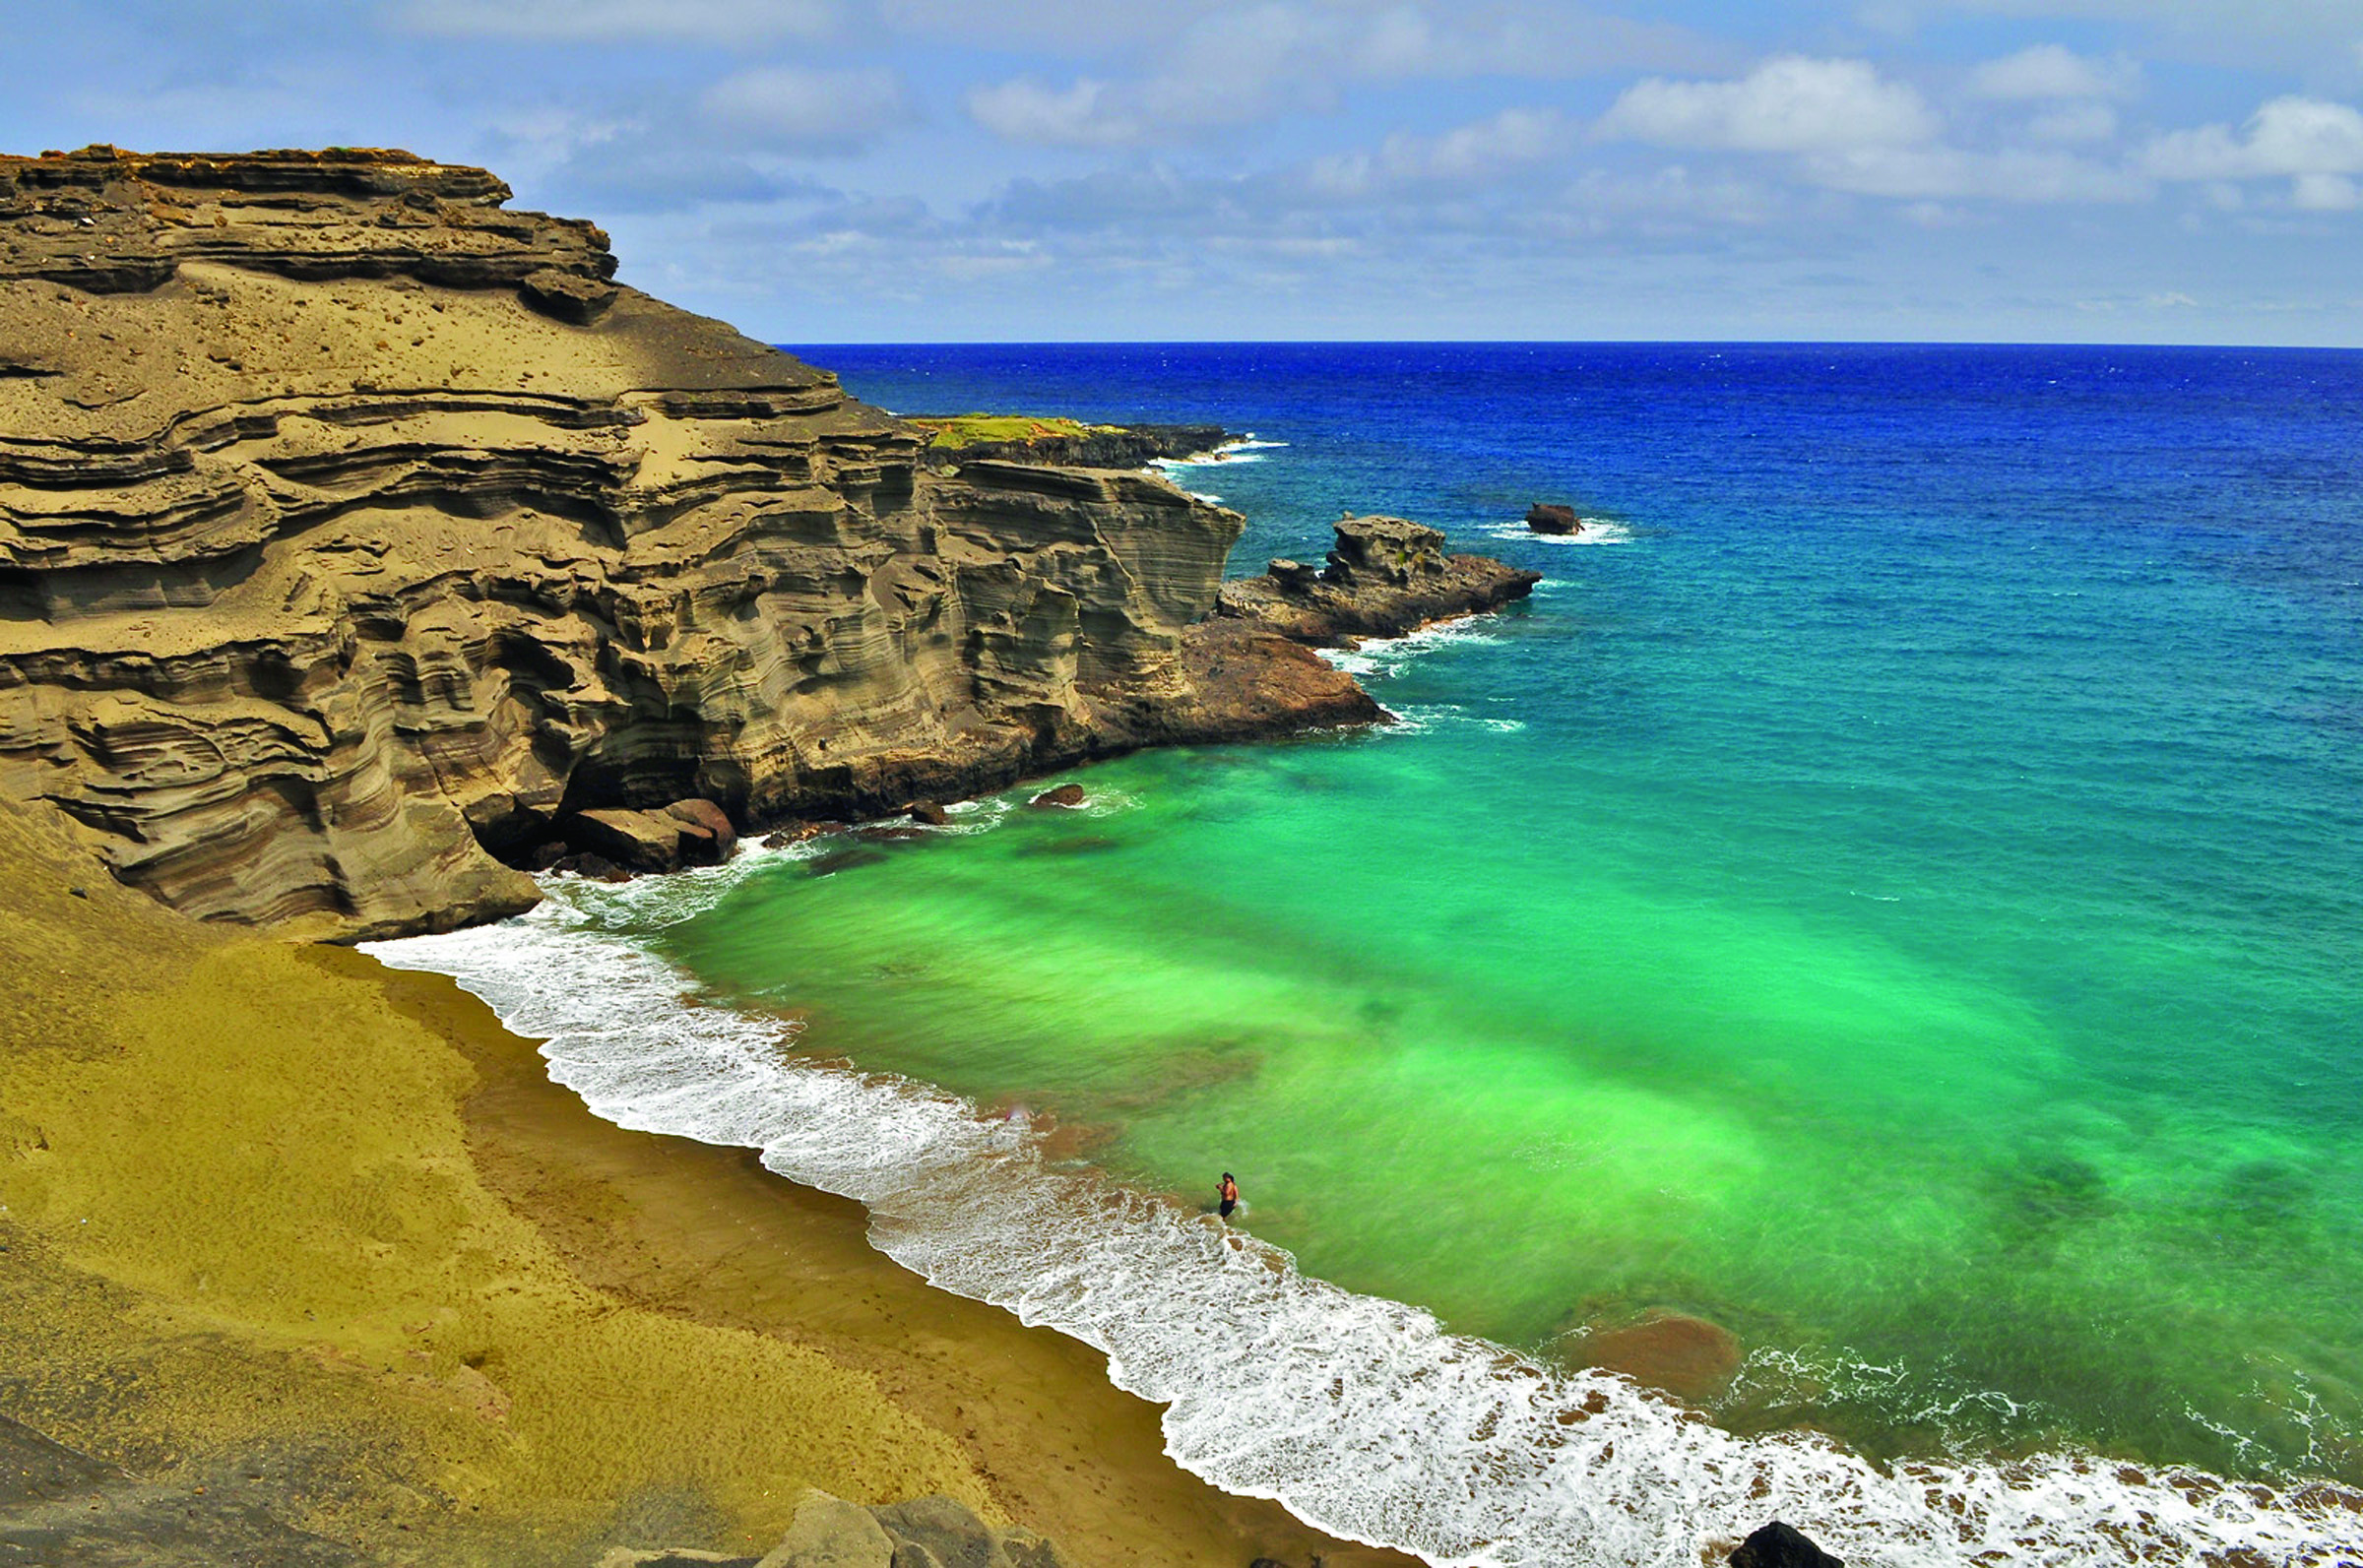 Pe Plaja Papakolea vei vedea cel mai verde nisip, colorat din cauza activitatii vulcanice din zona